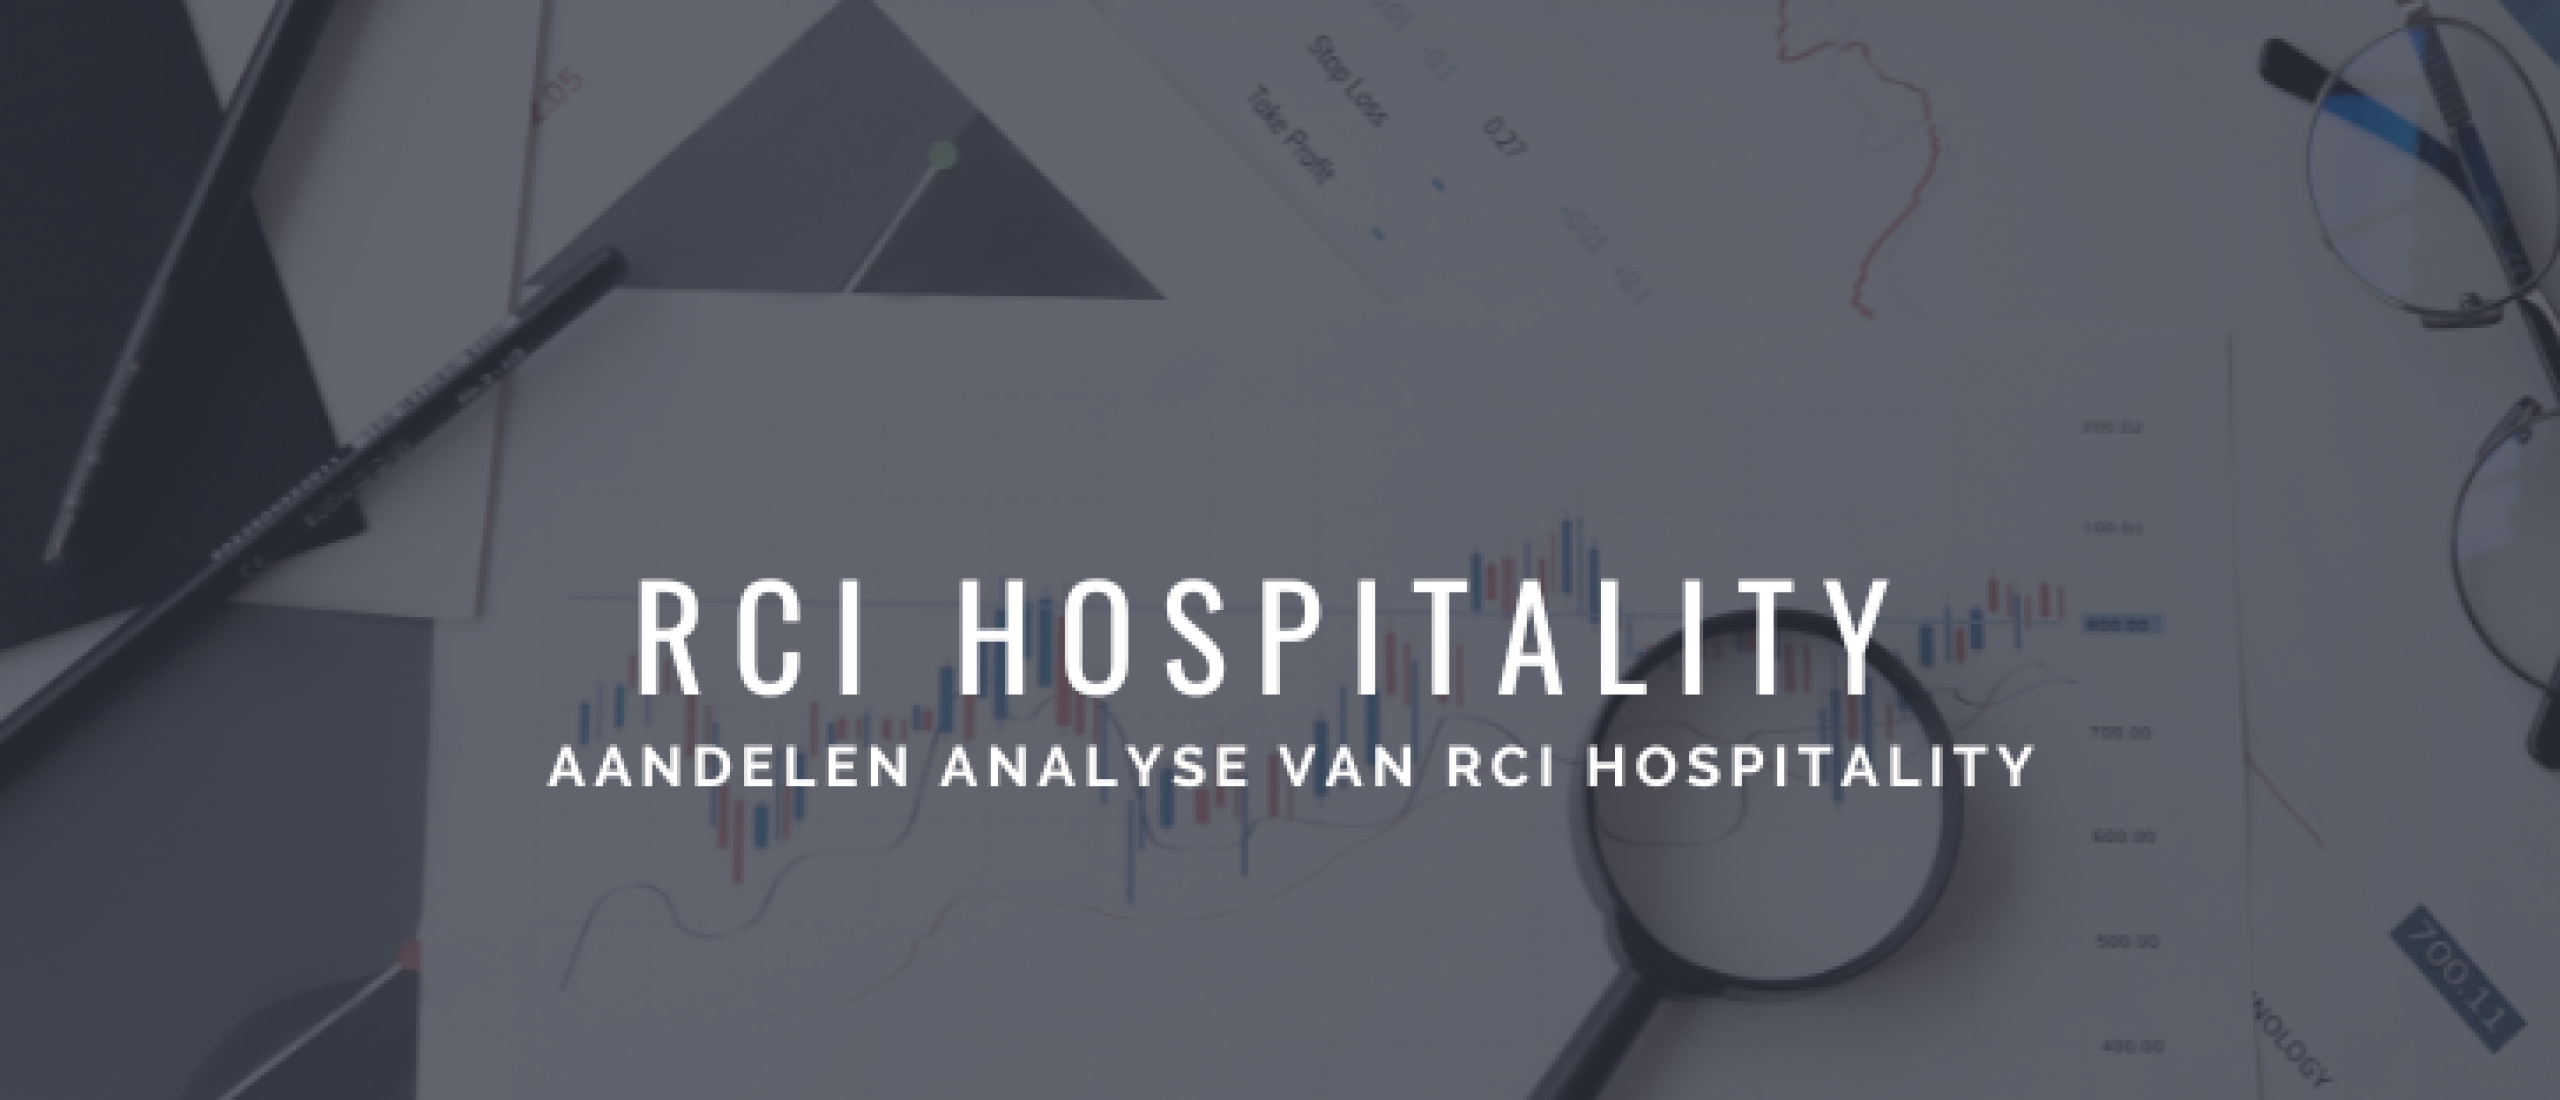 RCI Hospitality Aandelen Kopen? Analyse +60% Groei | Happy Investors